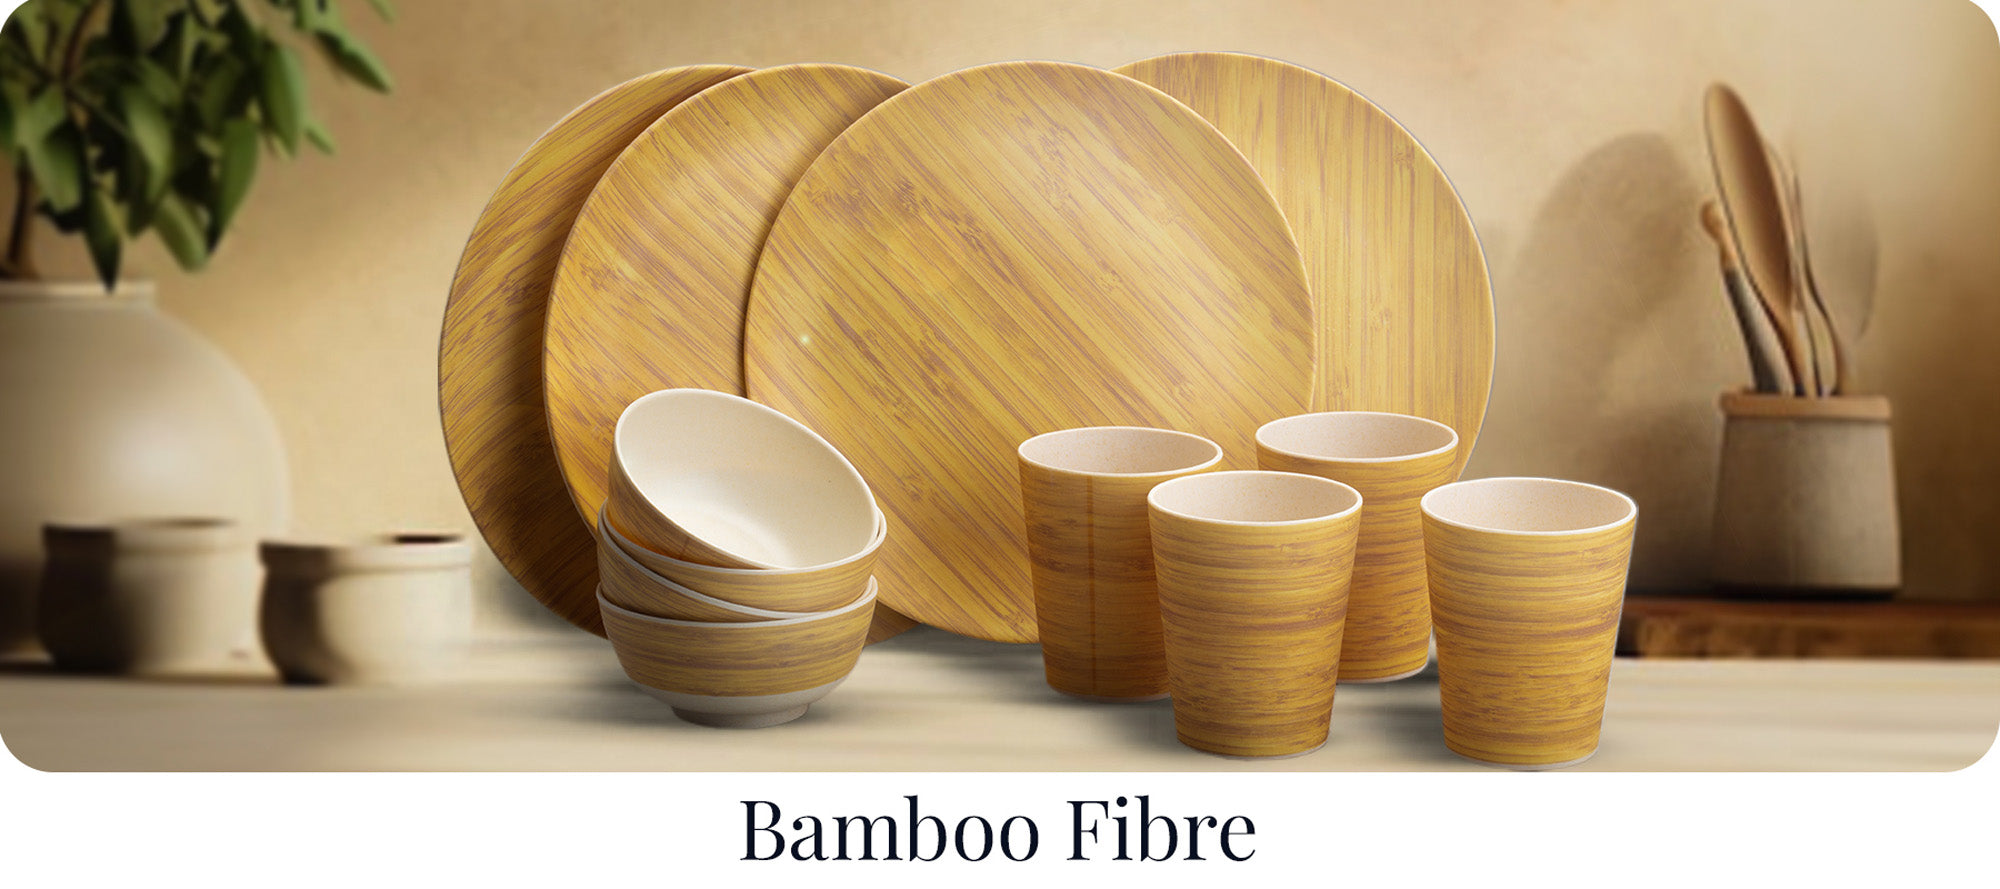 Bamboo Fibre Collection